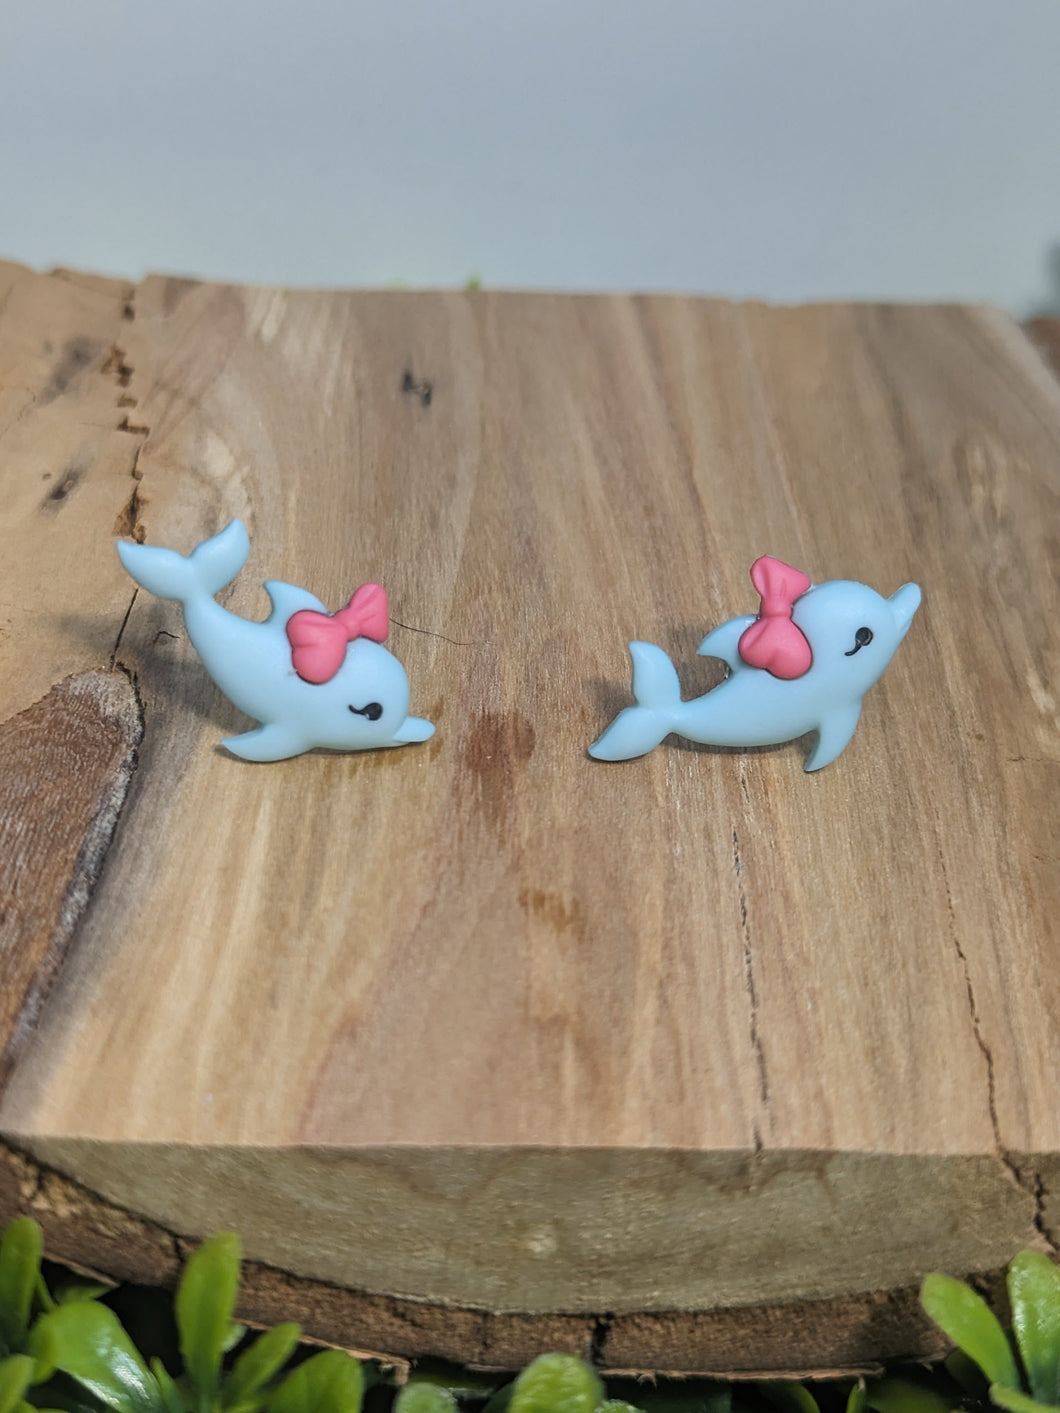 Dolphin stud earrings